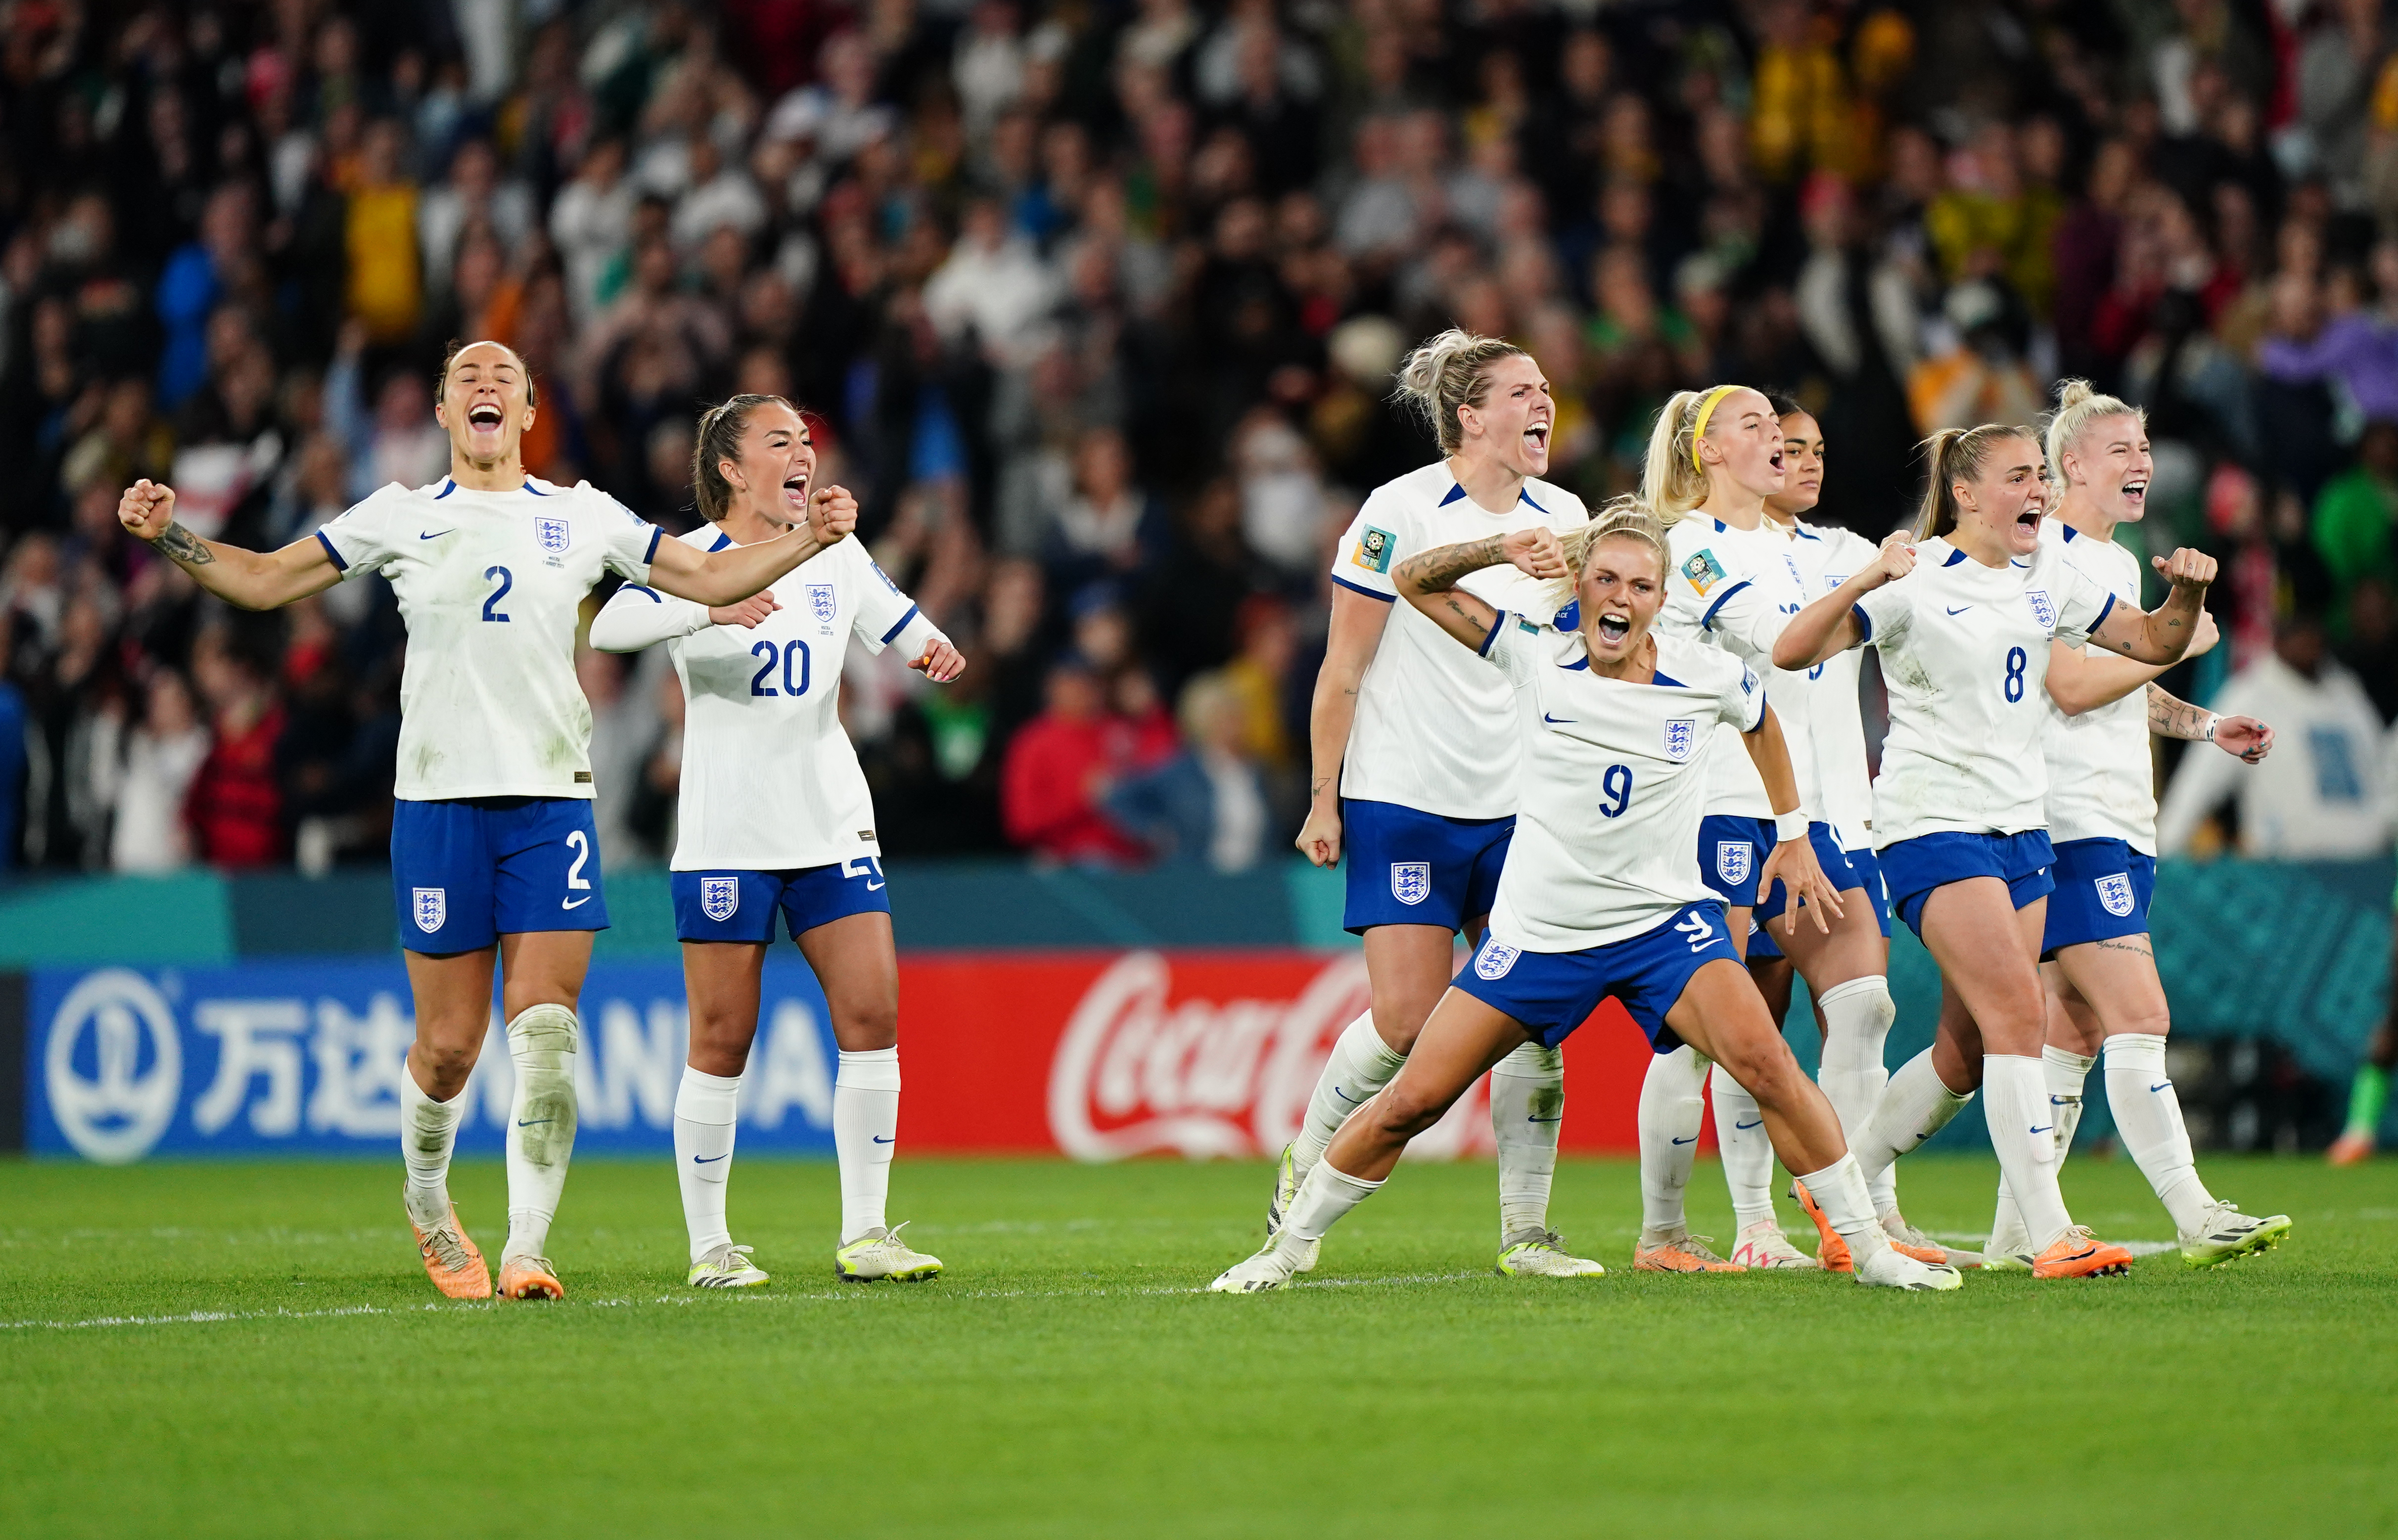 Kader von England bei der Frauen-WM 2023 alle Spielerinnen und Infos